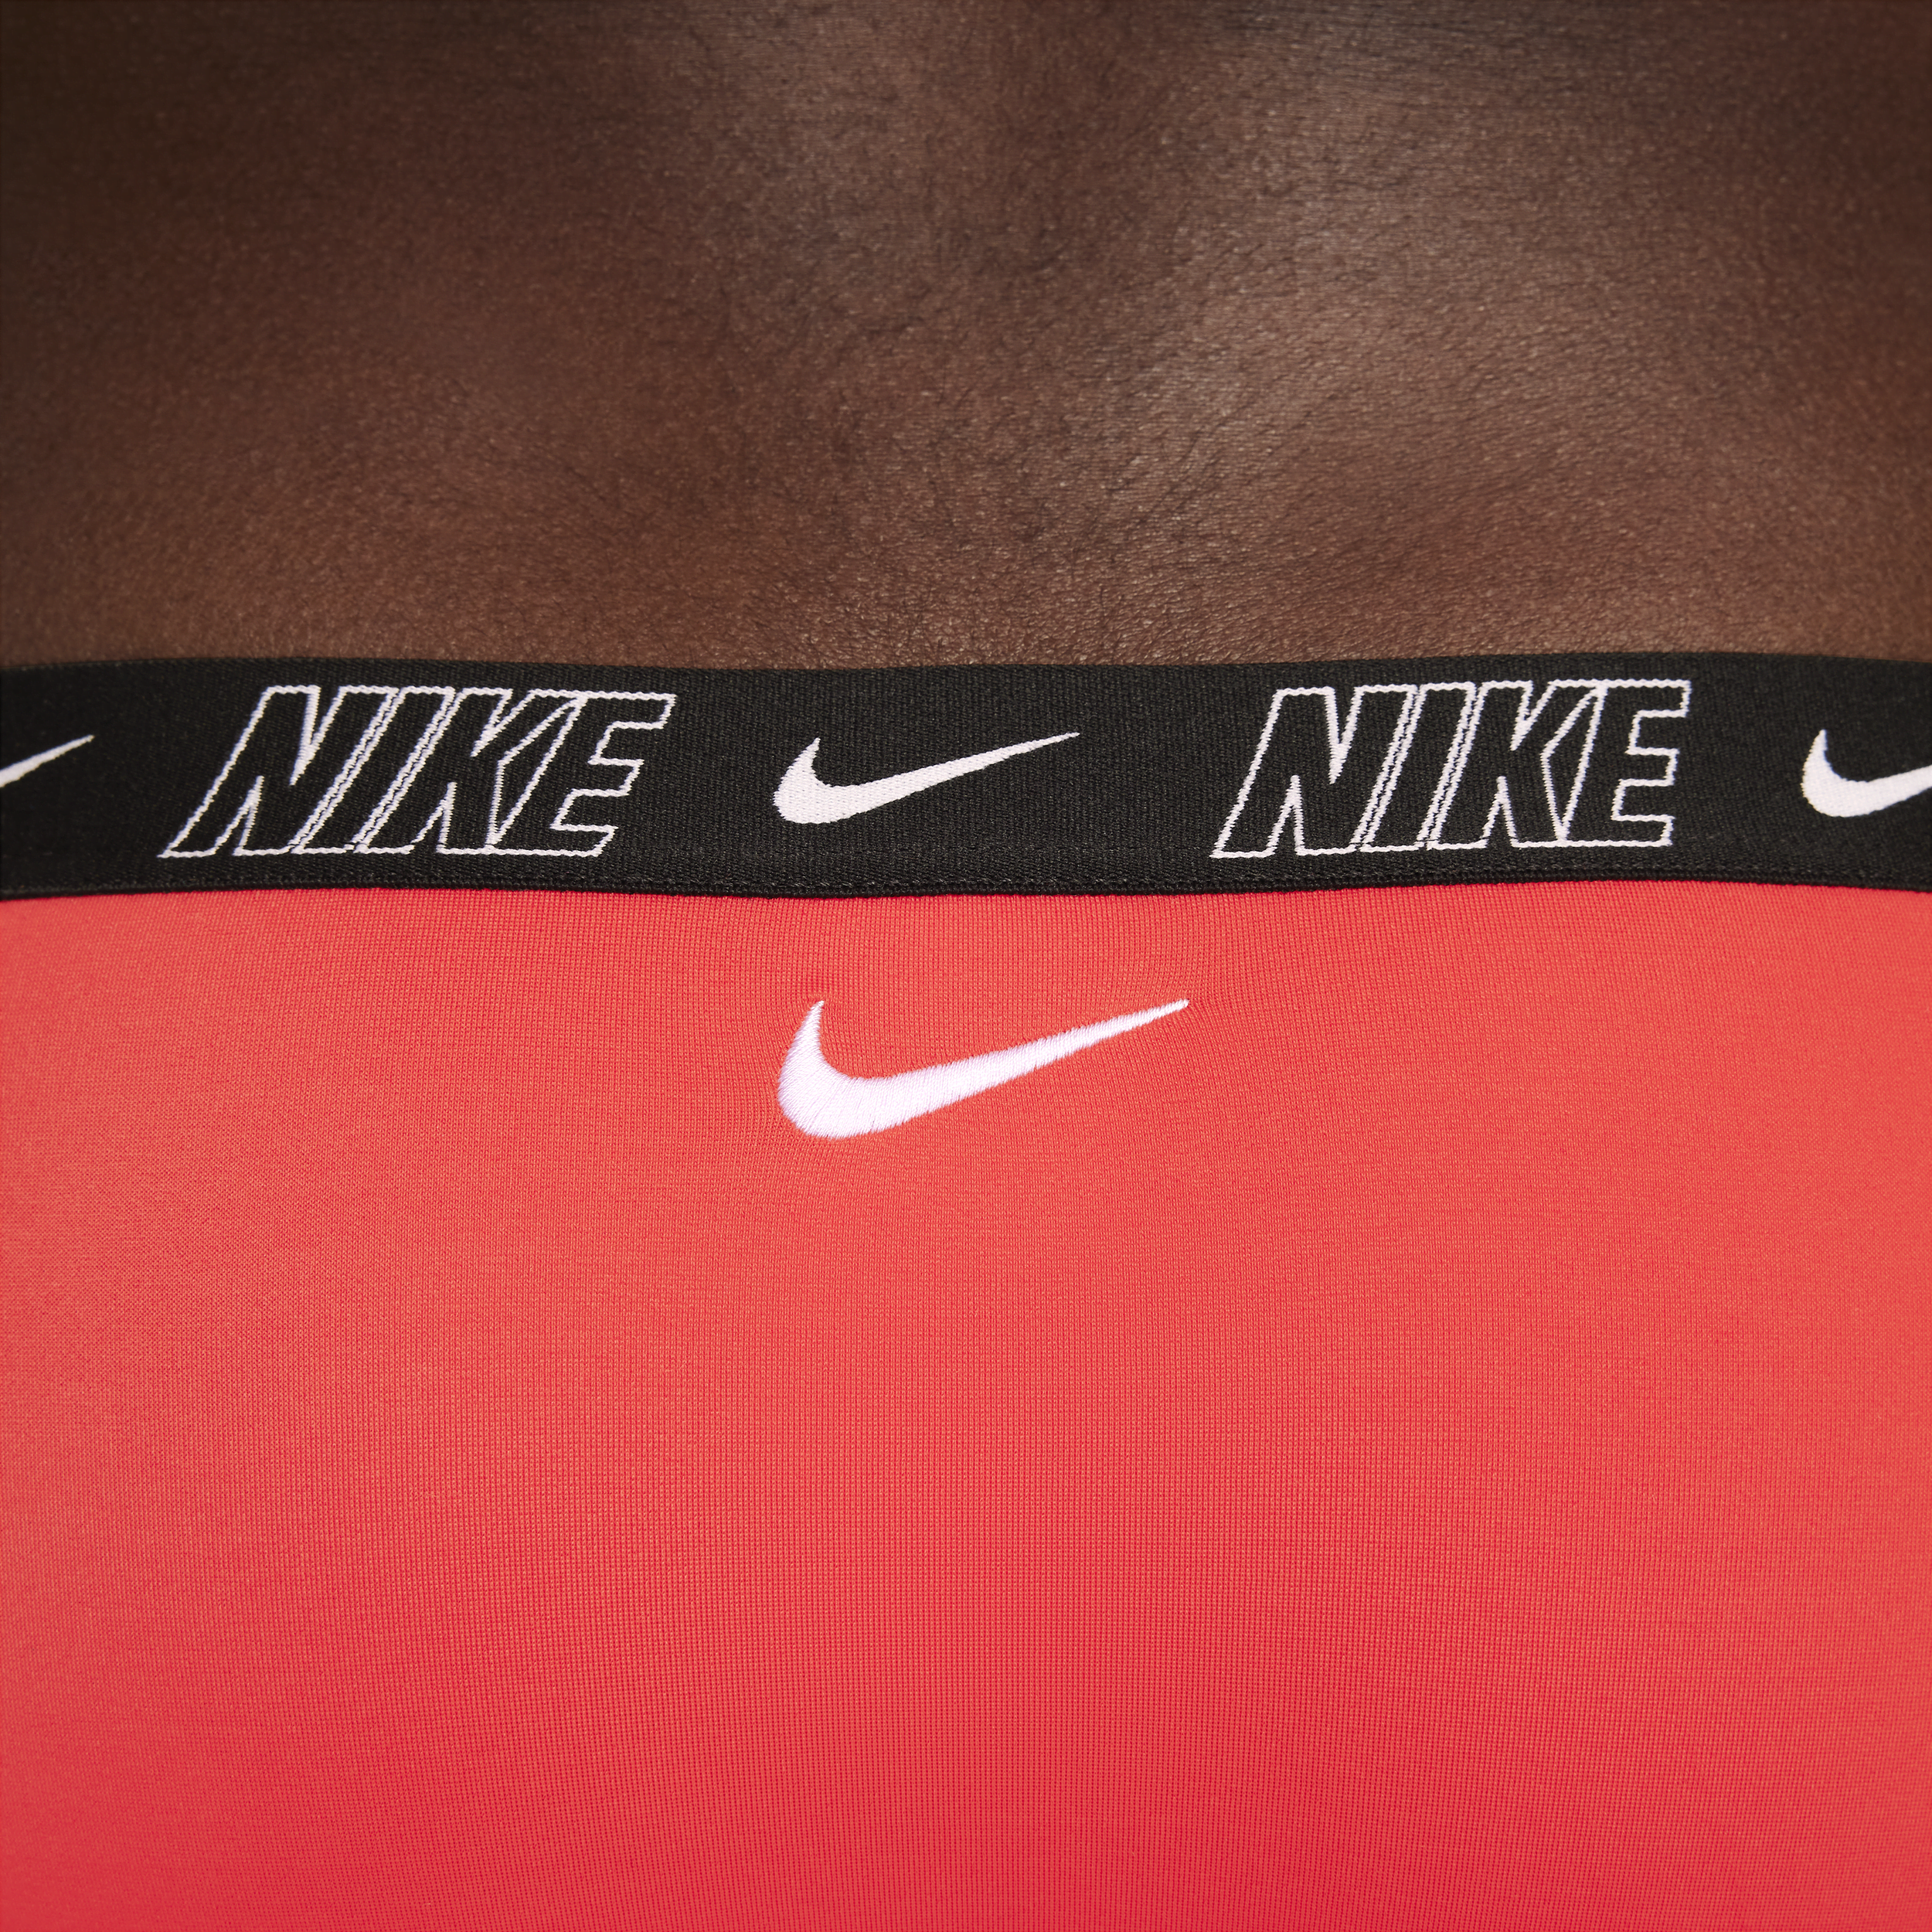 Nike Swim midkiniset met gekruiste bandjes voor meisjes Rood